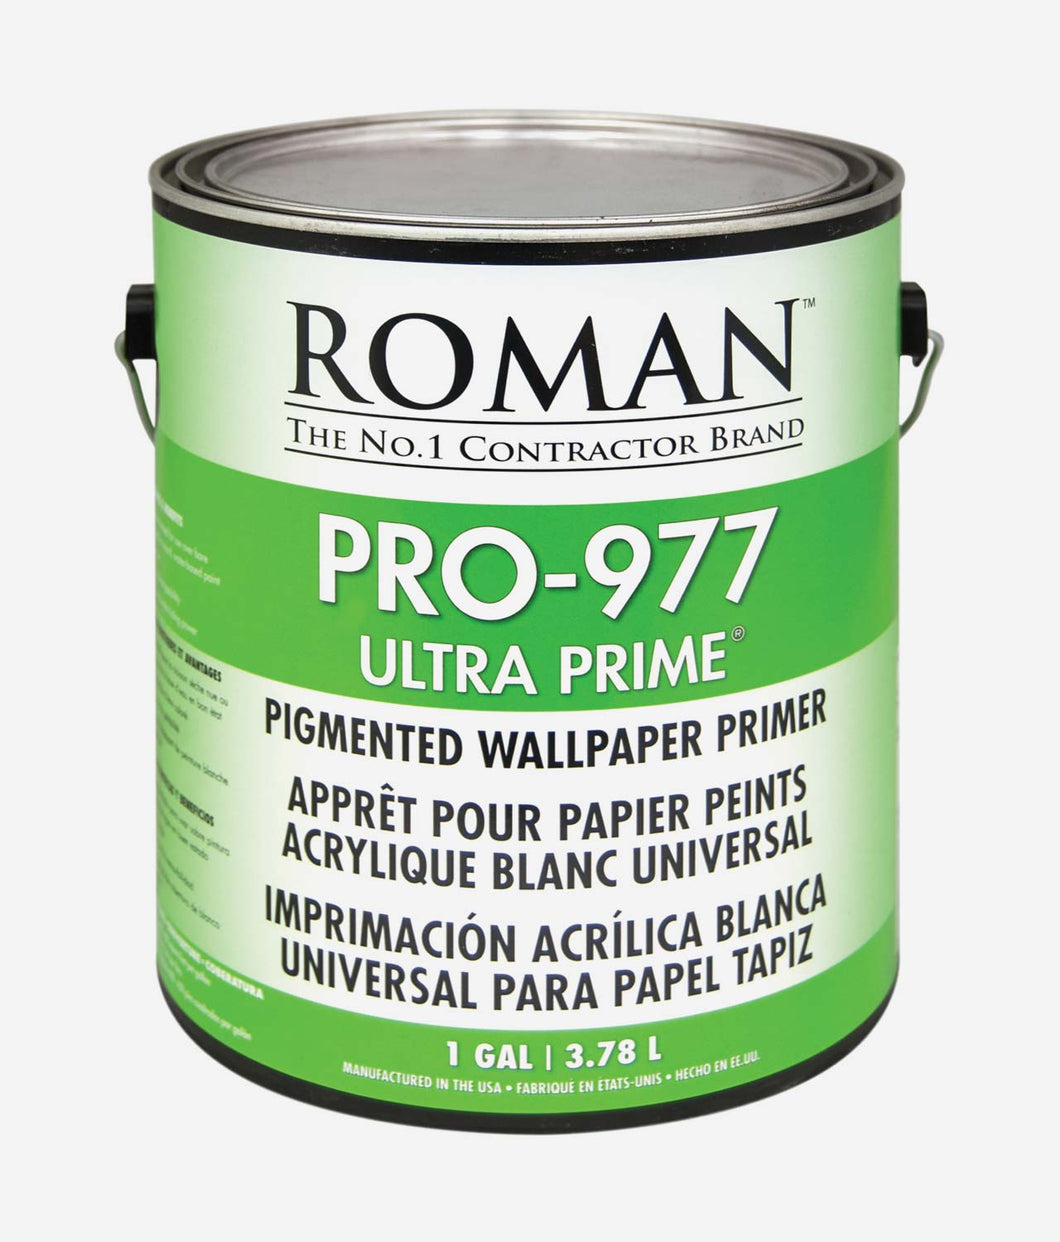 ROMAN PRO-977 ULTRA PRIME